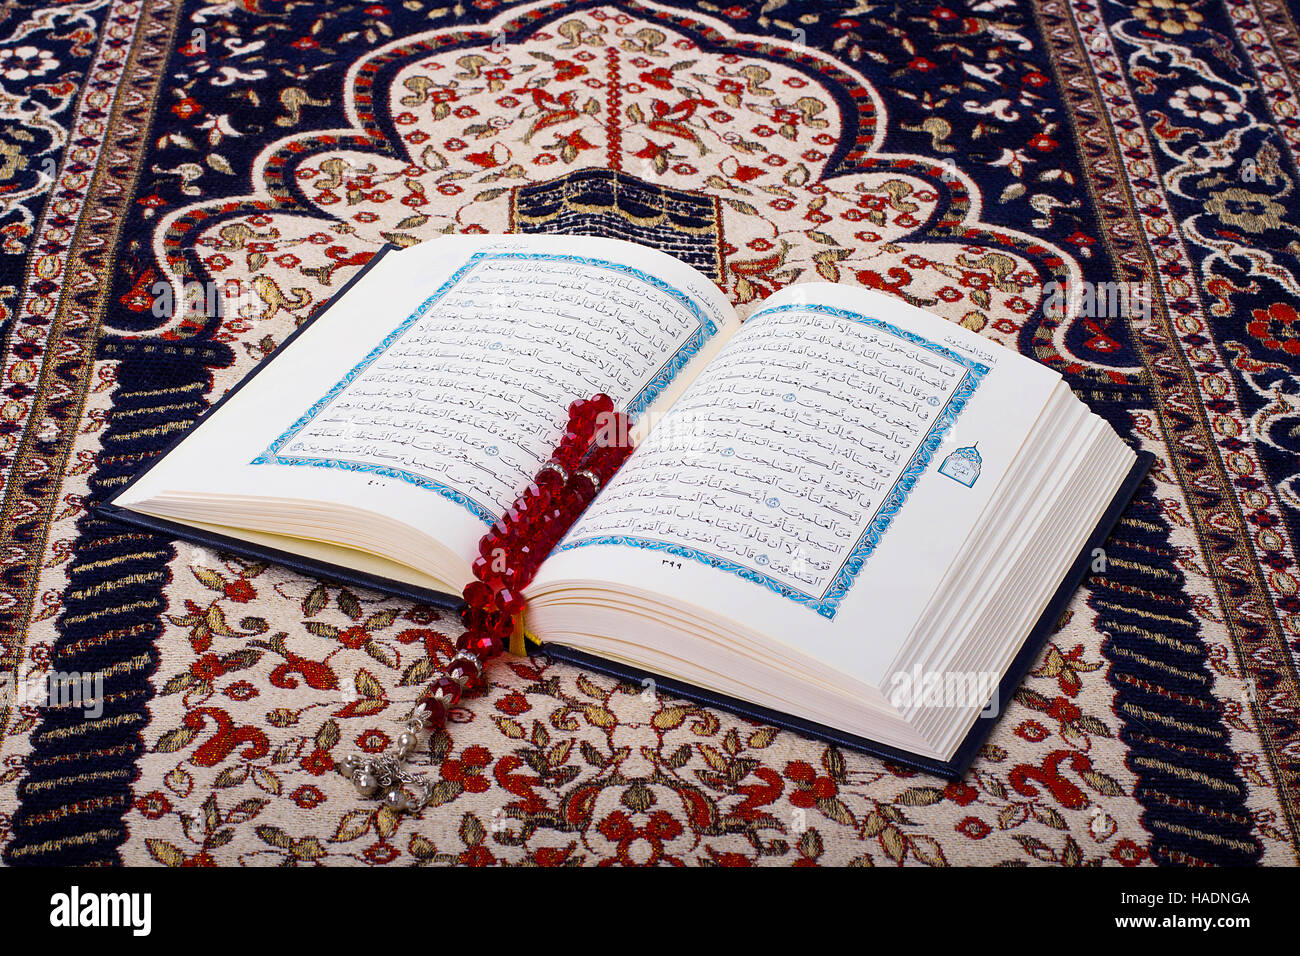 Le Coran, livre saint des musulmans ( ) sur un tapis de prière